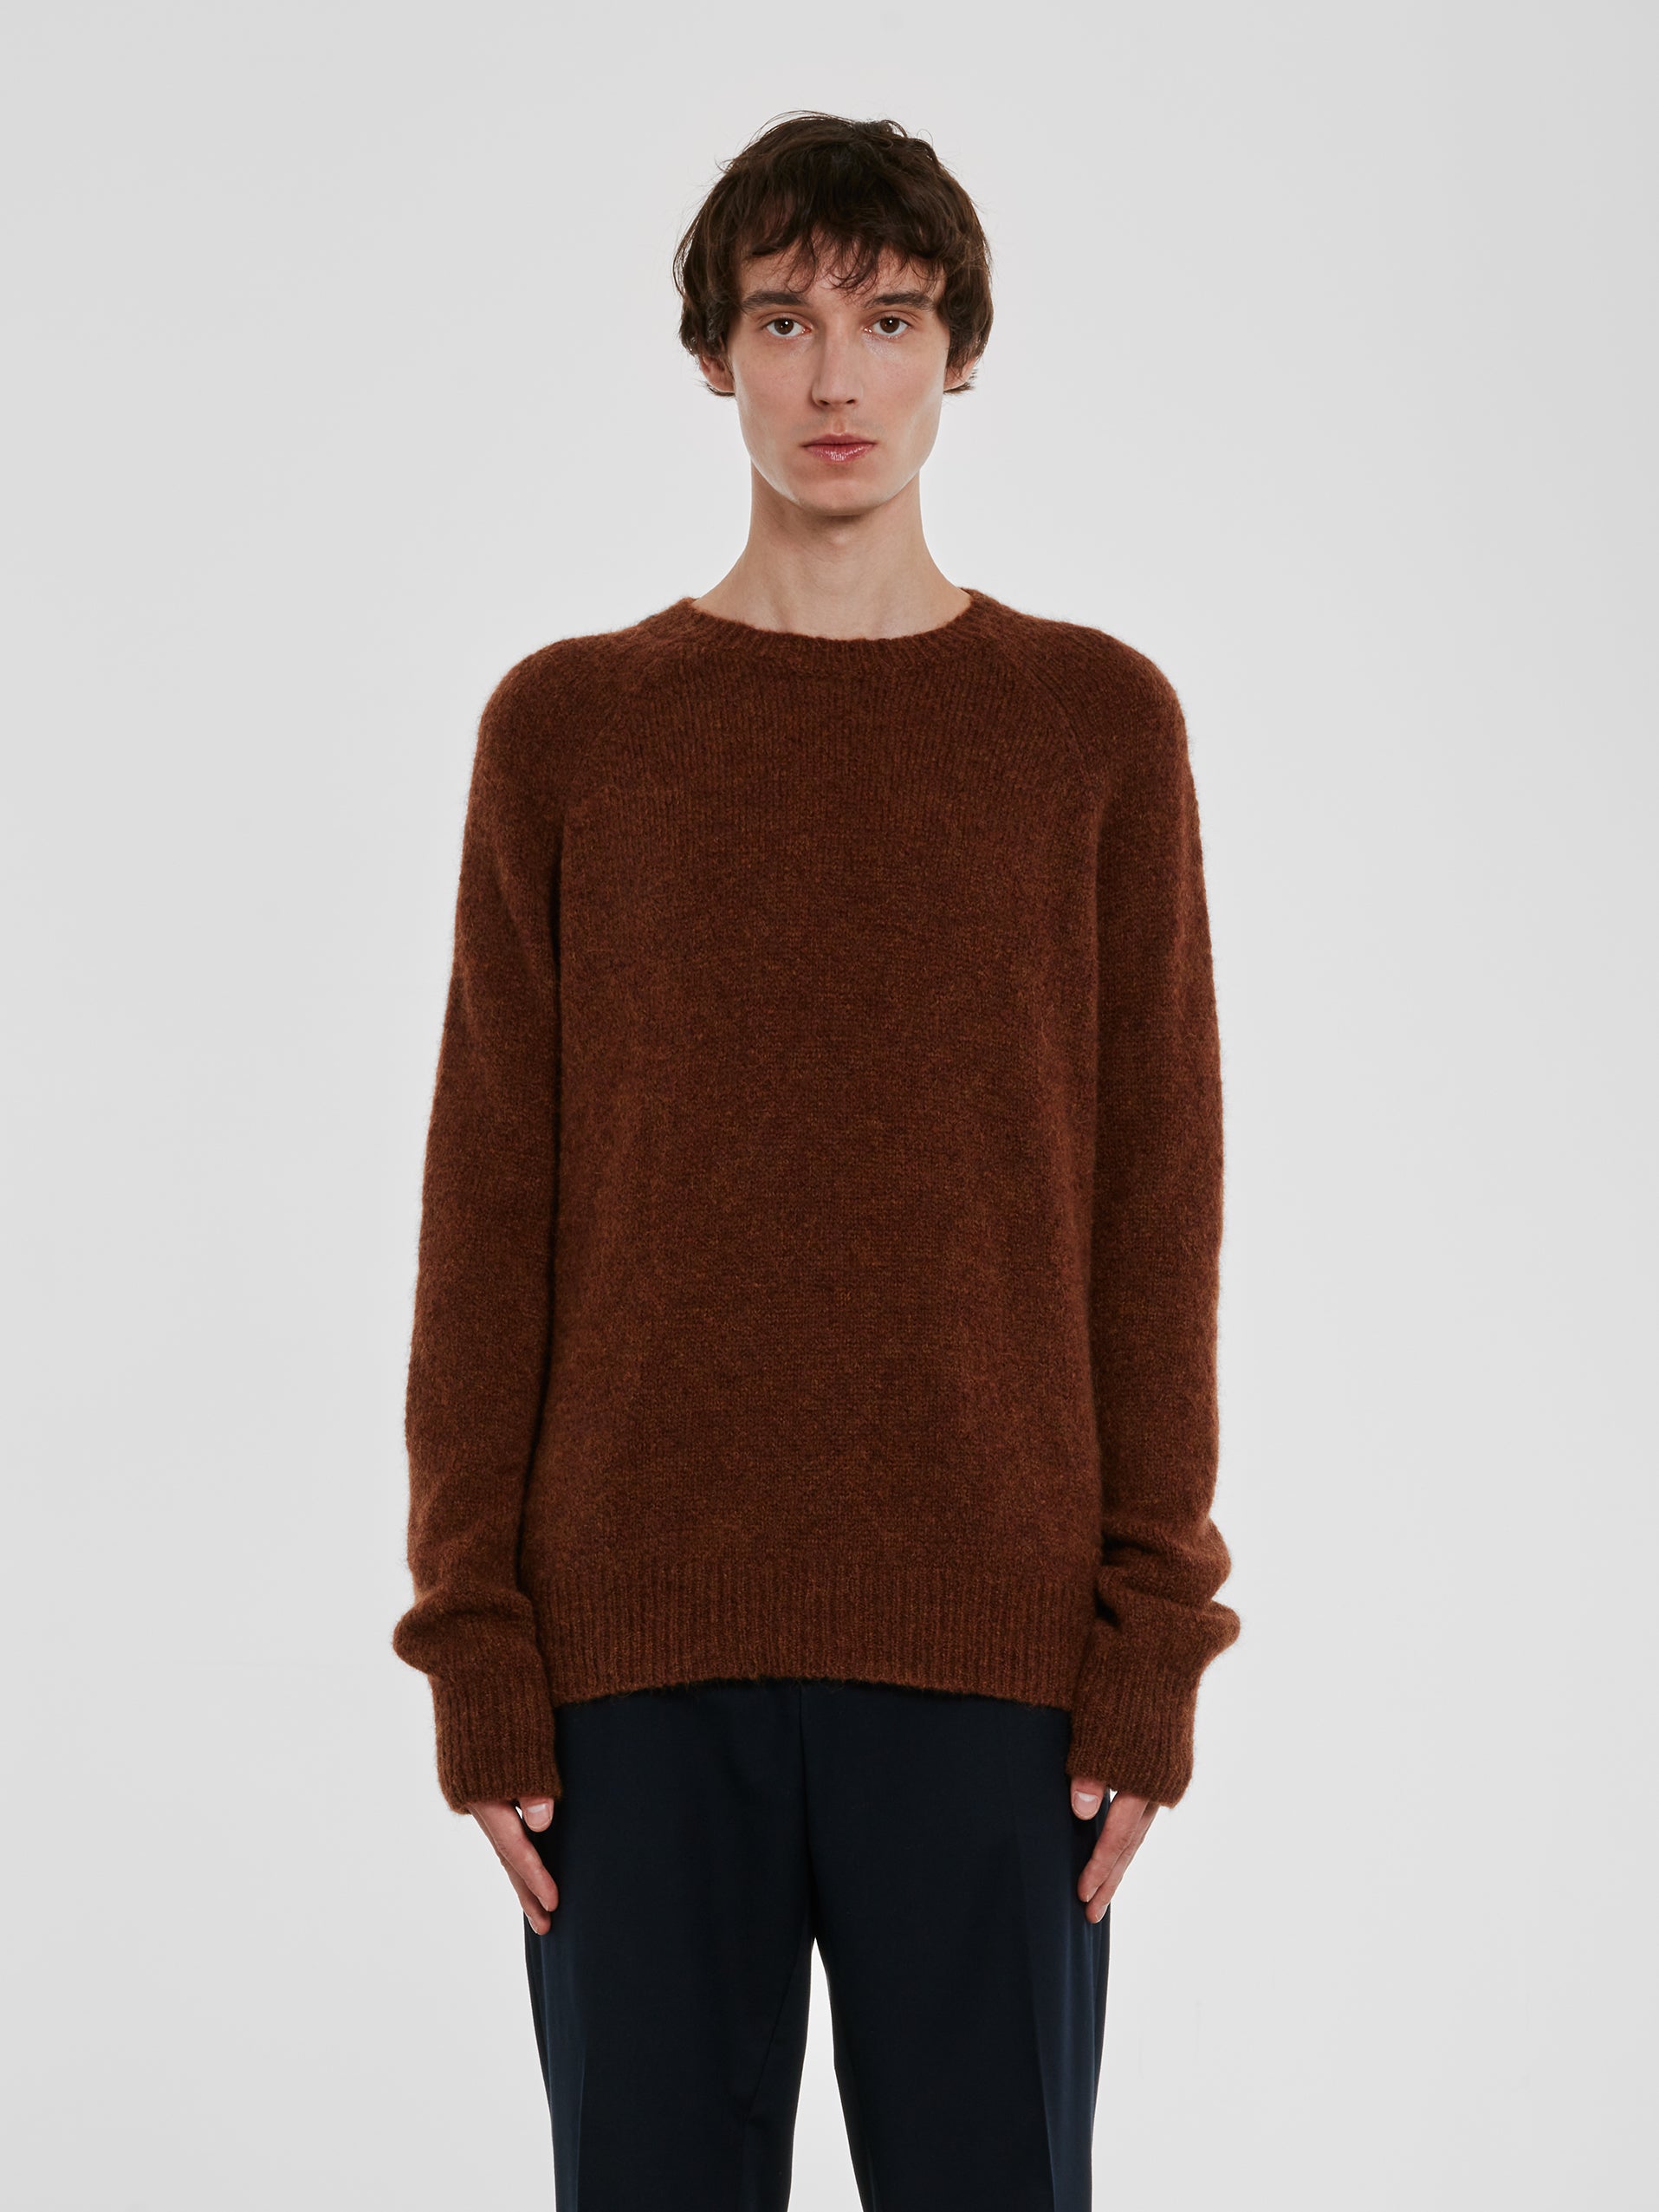 Dries Van Noten - Men’s Wool Sweater - (Brown) view 1